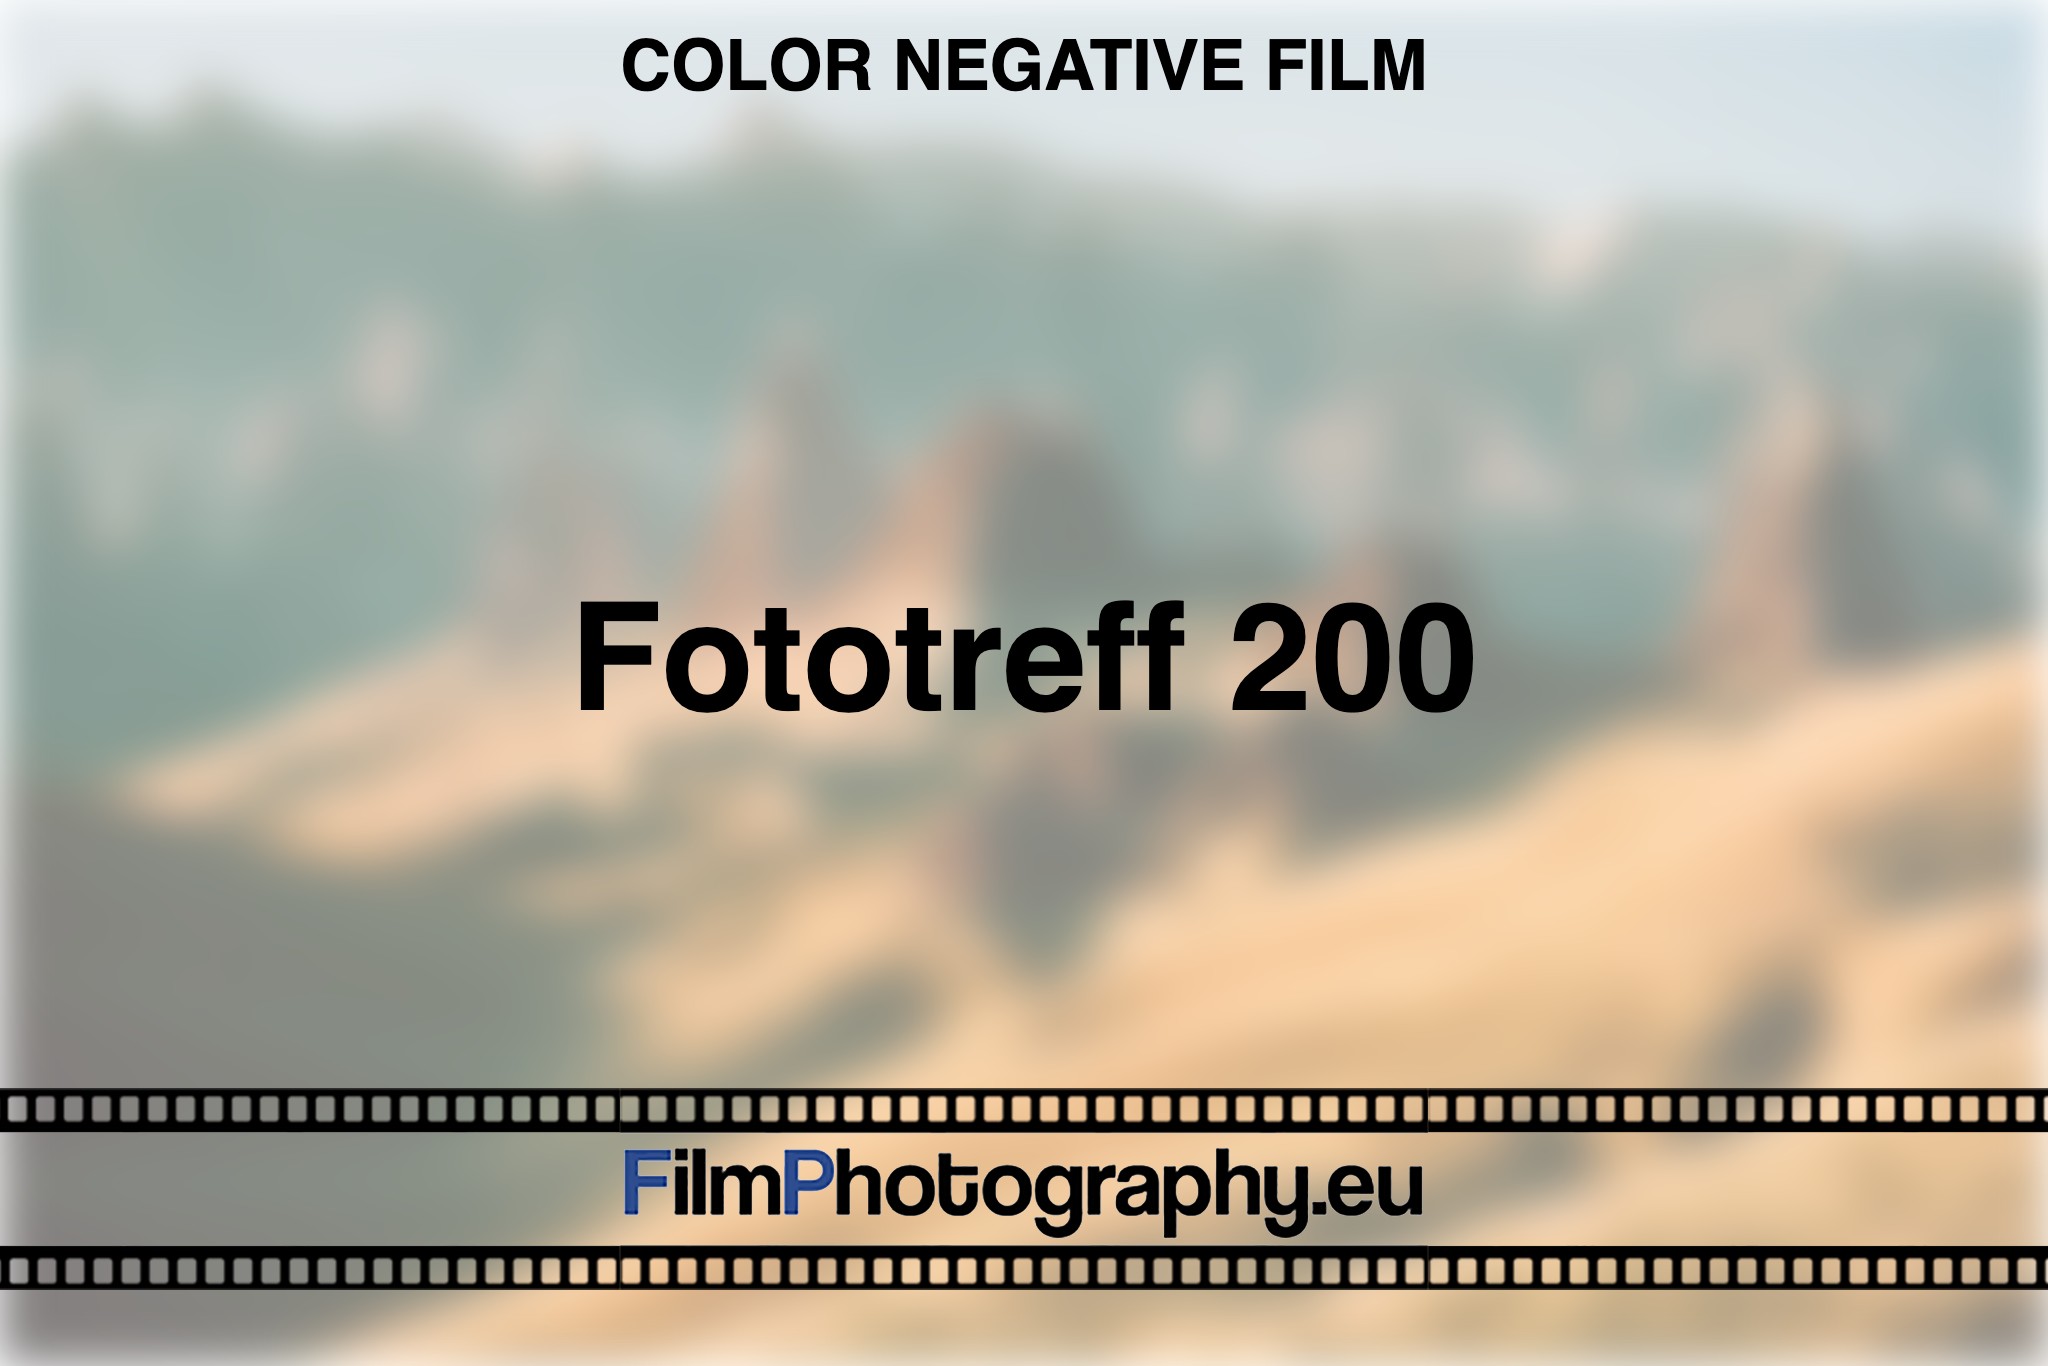 fototreff-200-color-negative-film-bnv